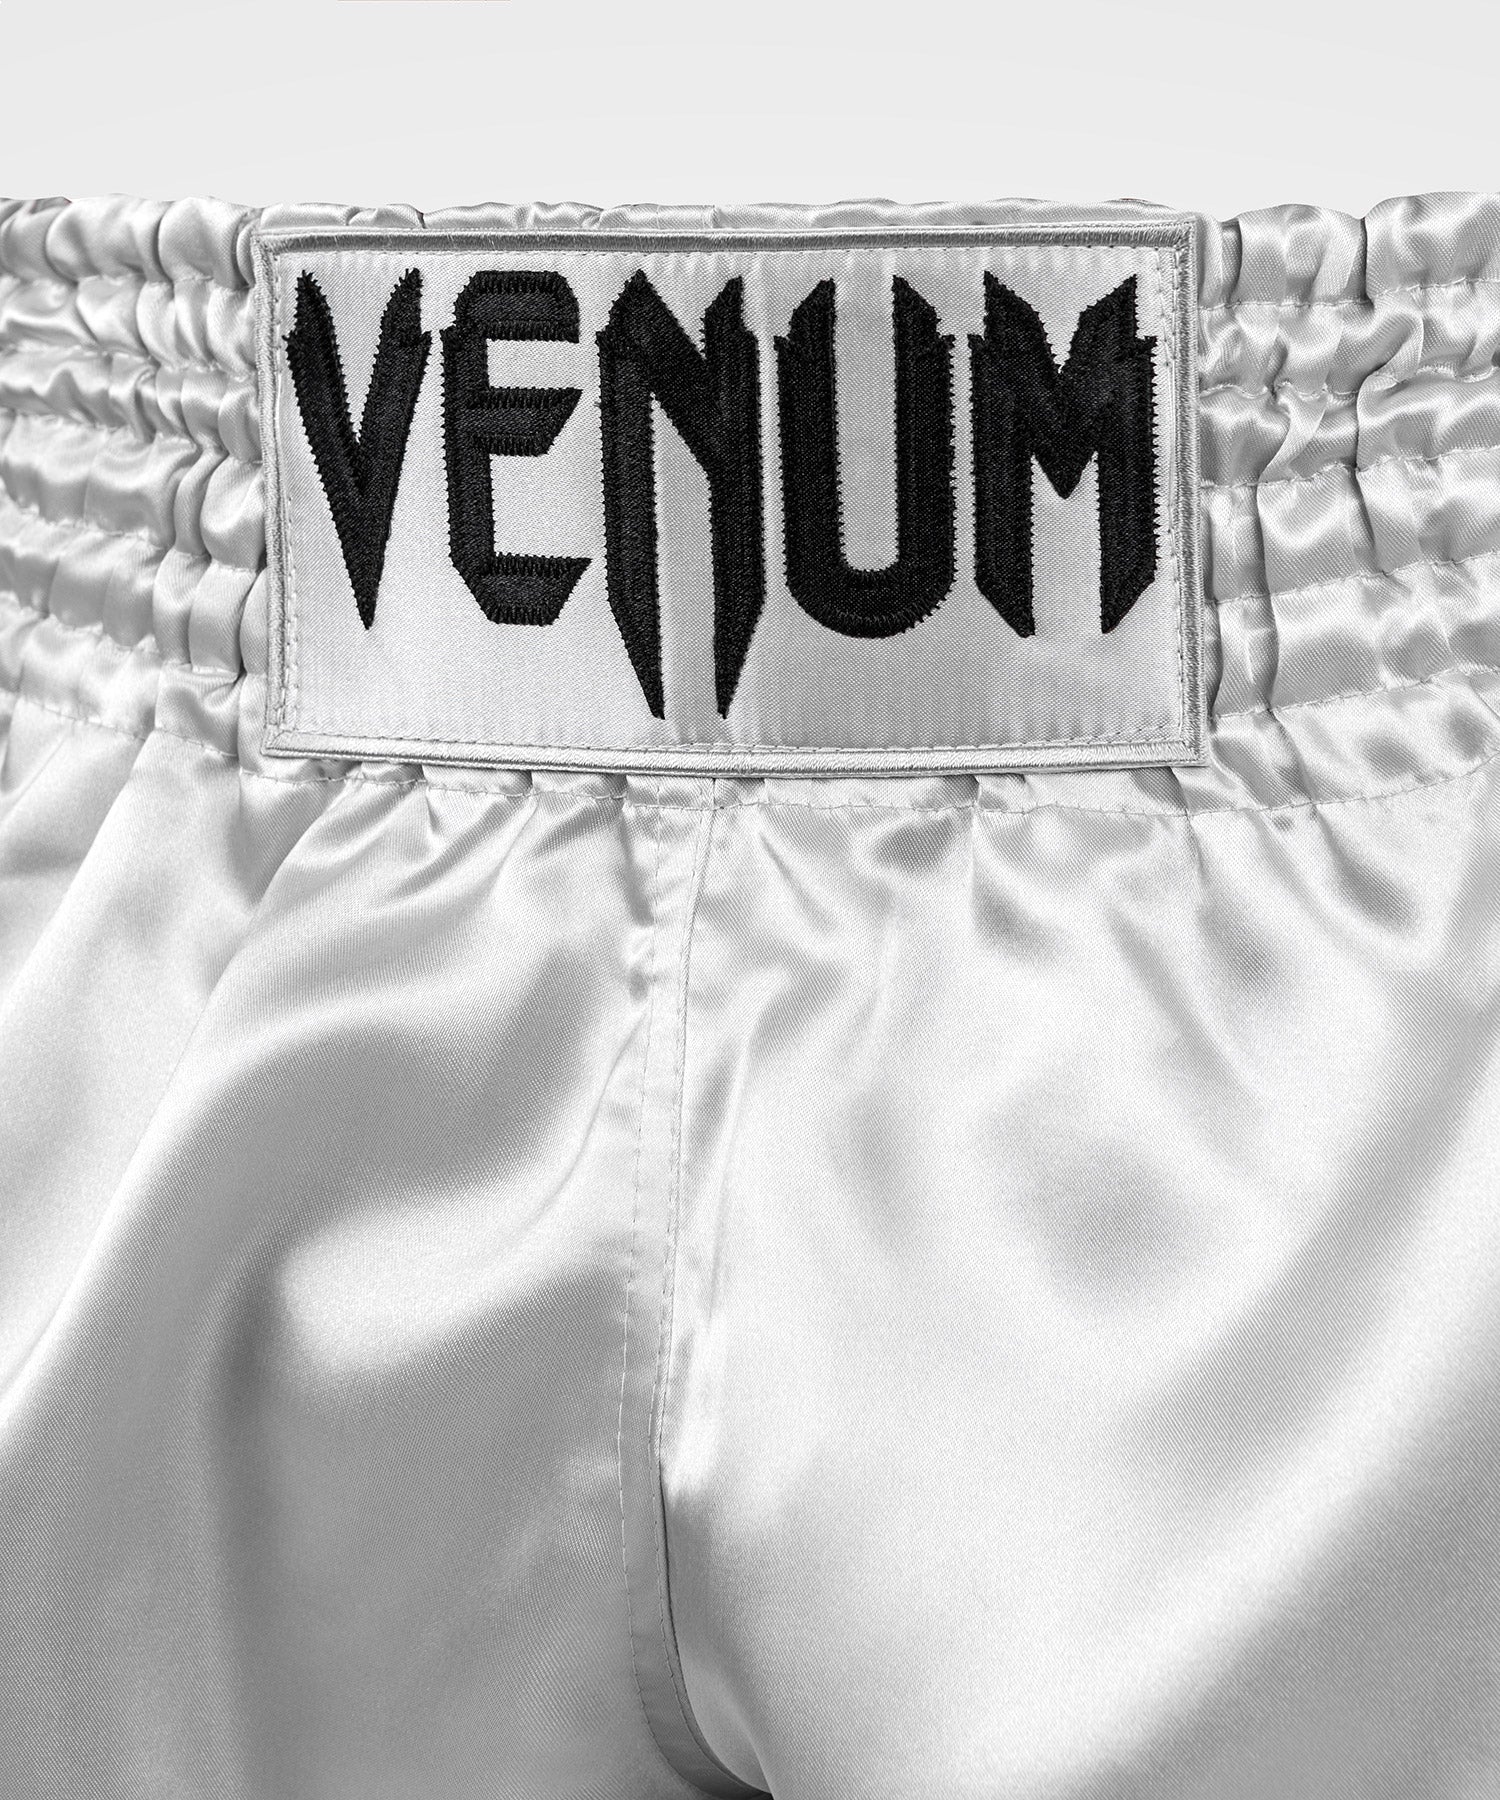 Short Venum Classic Muay Thai or / noir > Livraison Gratuite